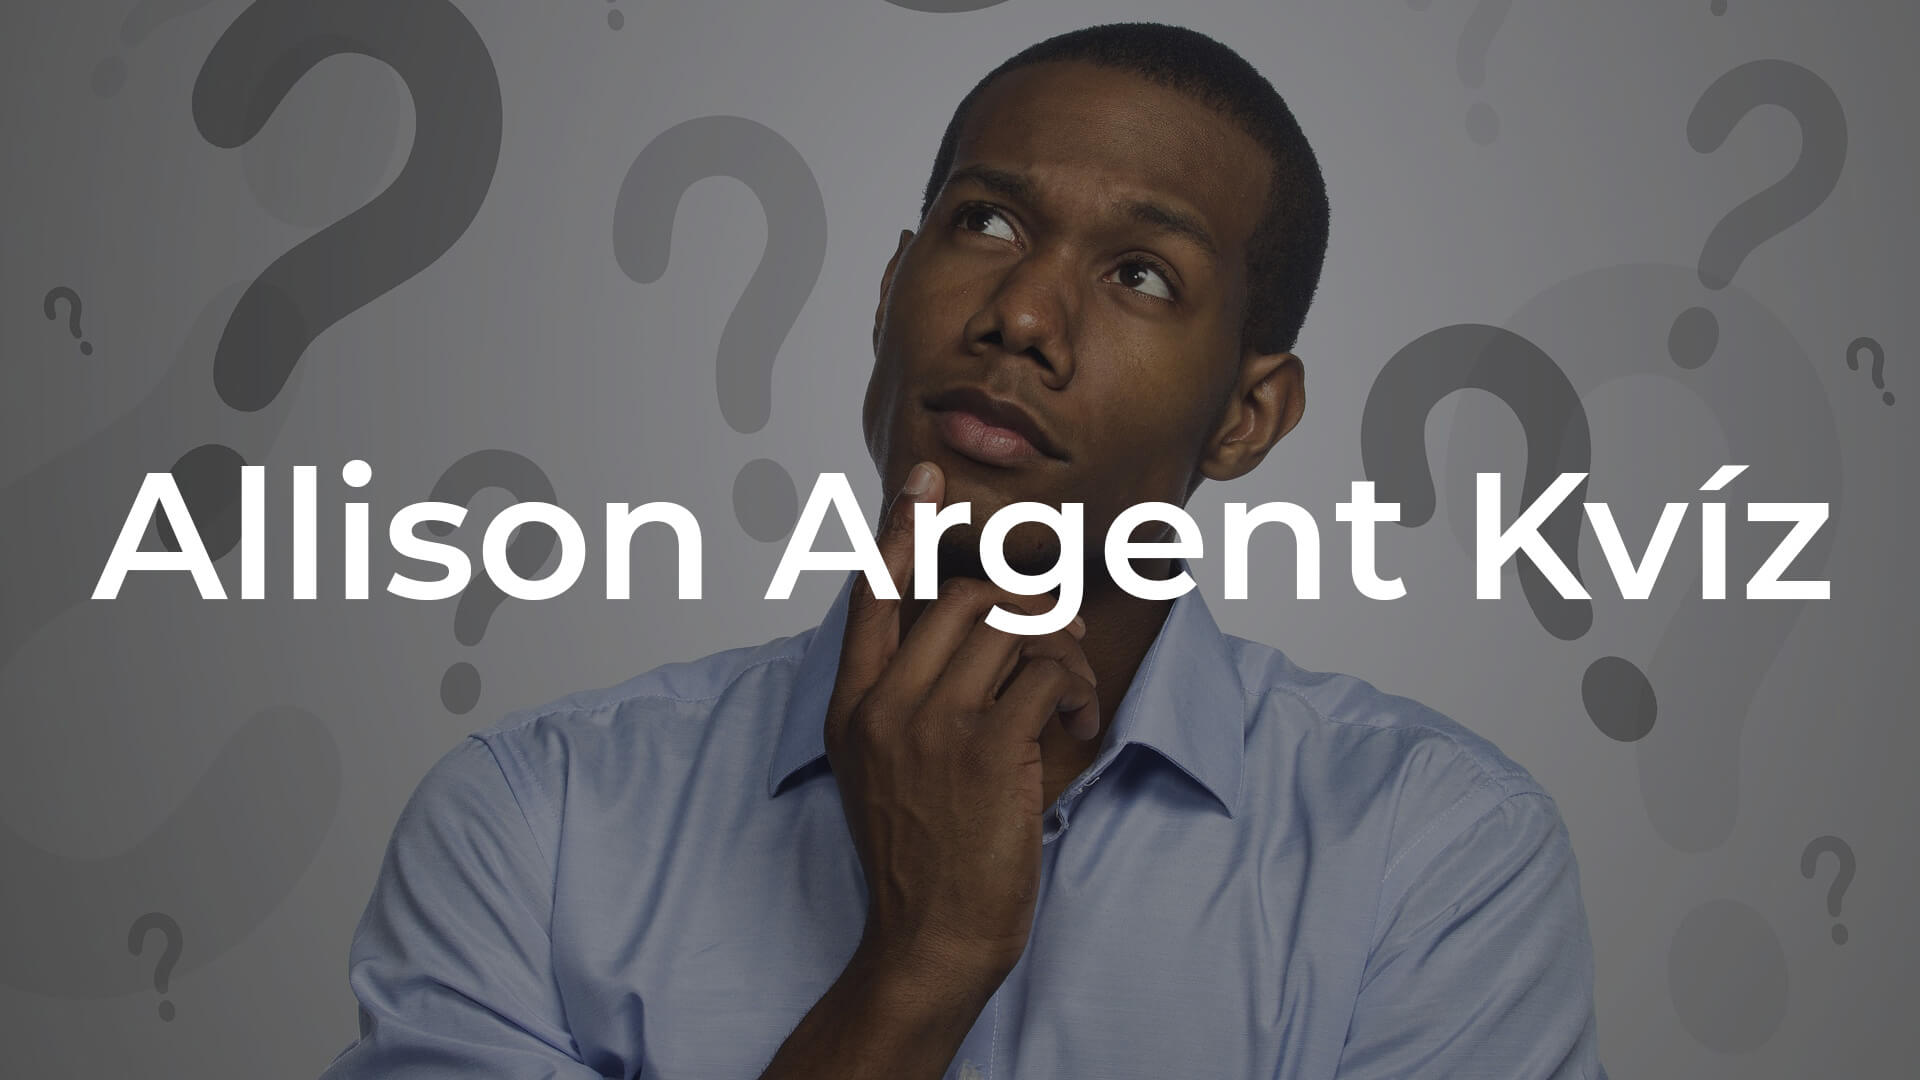 Mennyit tudsz Allison Argentről?